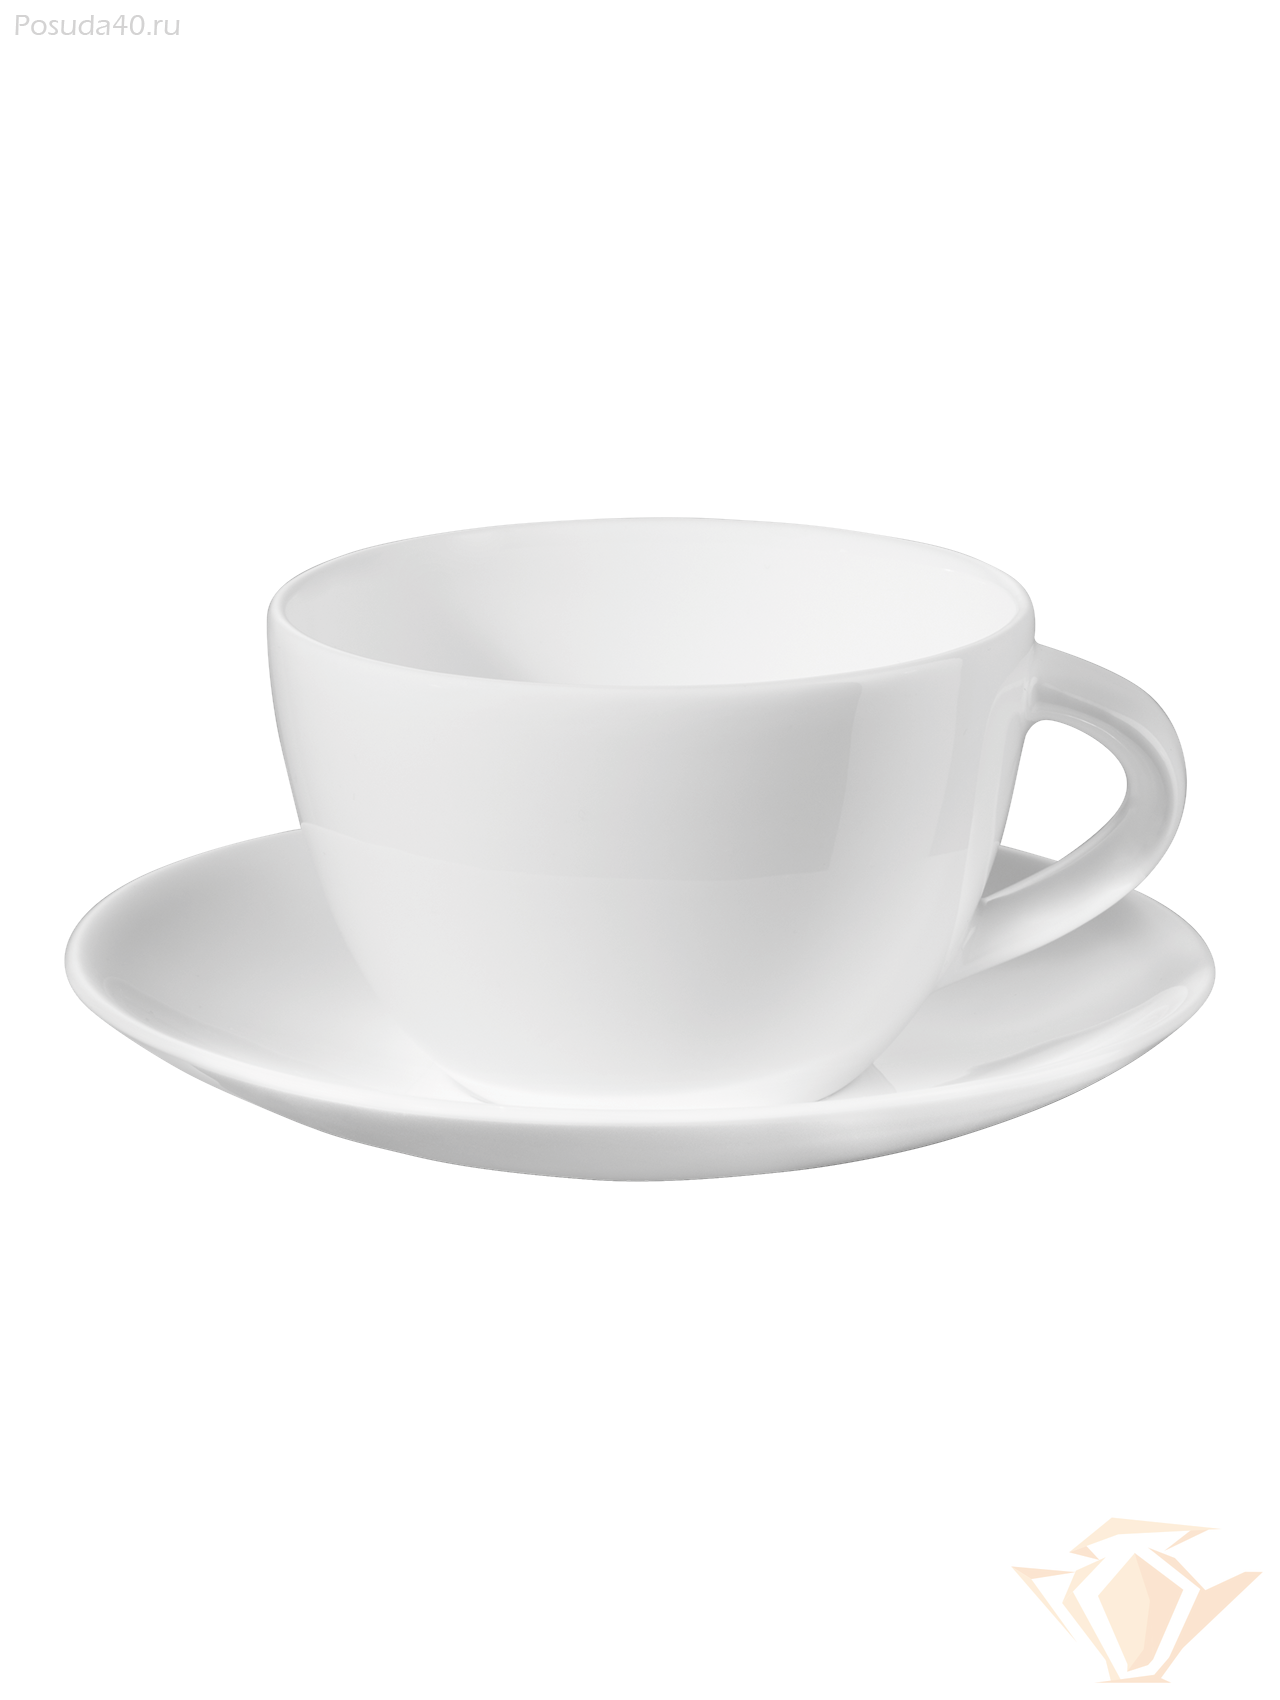 Белые кофейные чашки. Чашка с блюдцем Asa selection a Table. Чашка ристретто эспрессо. Кофейная чашка. Кофейная Кружка с блюдцем.